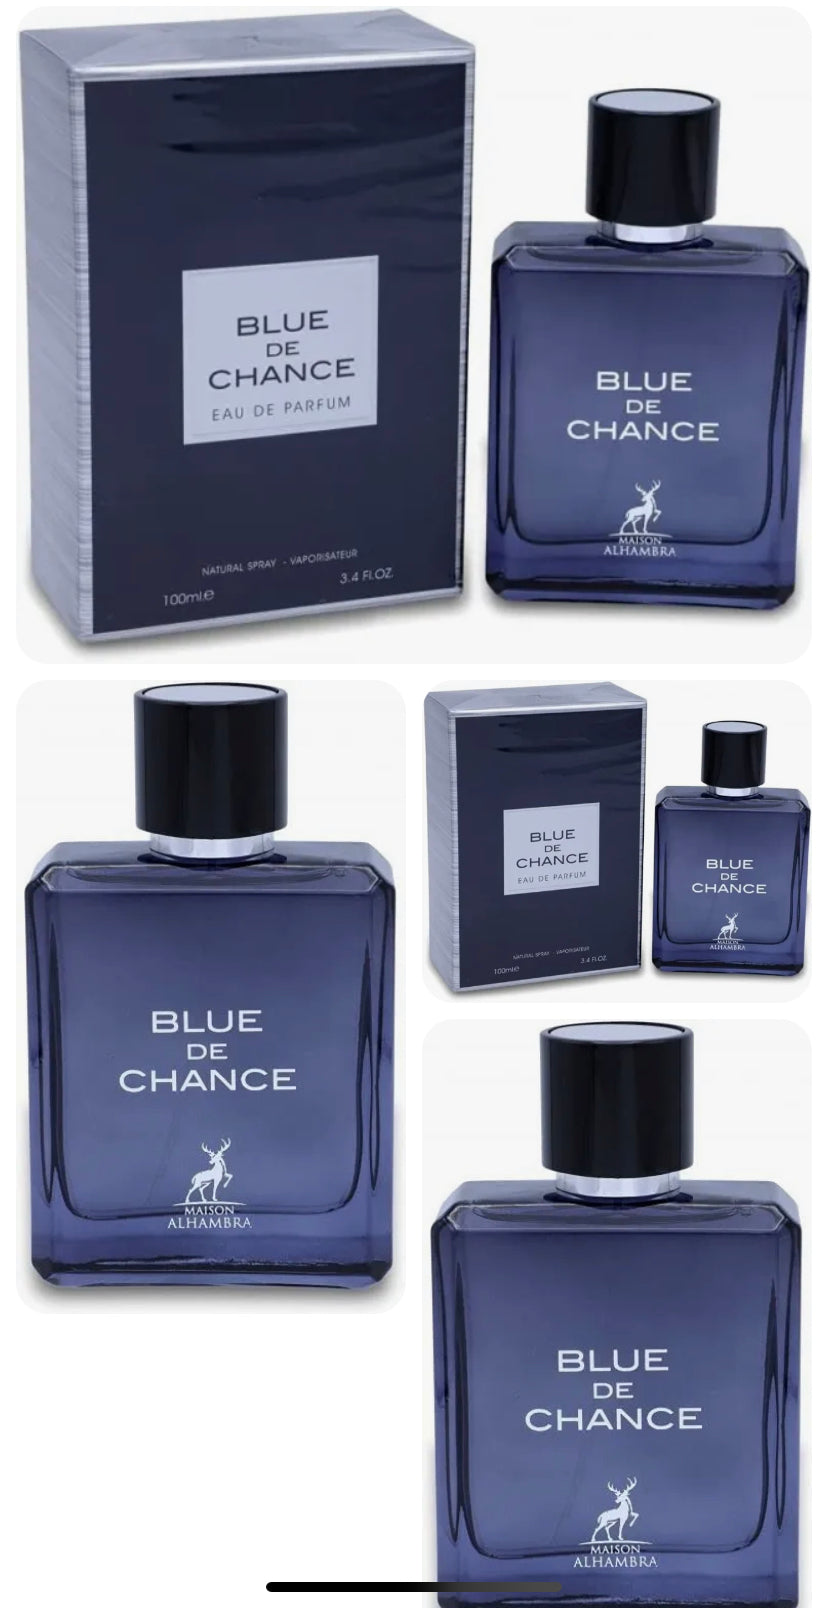 Blue de Chance by Maison Alhambra for Men